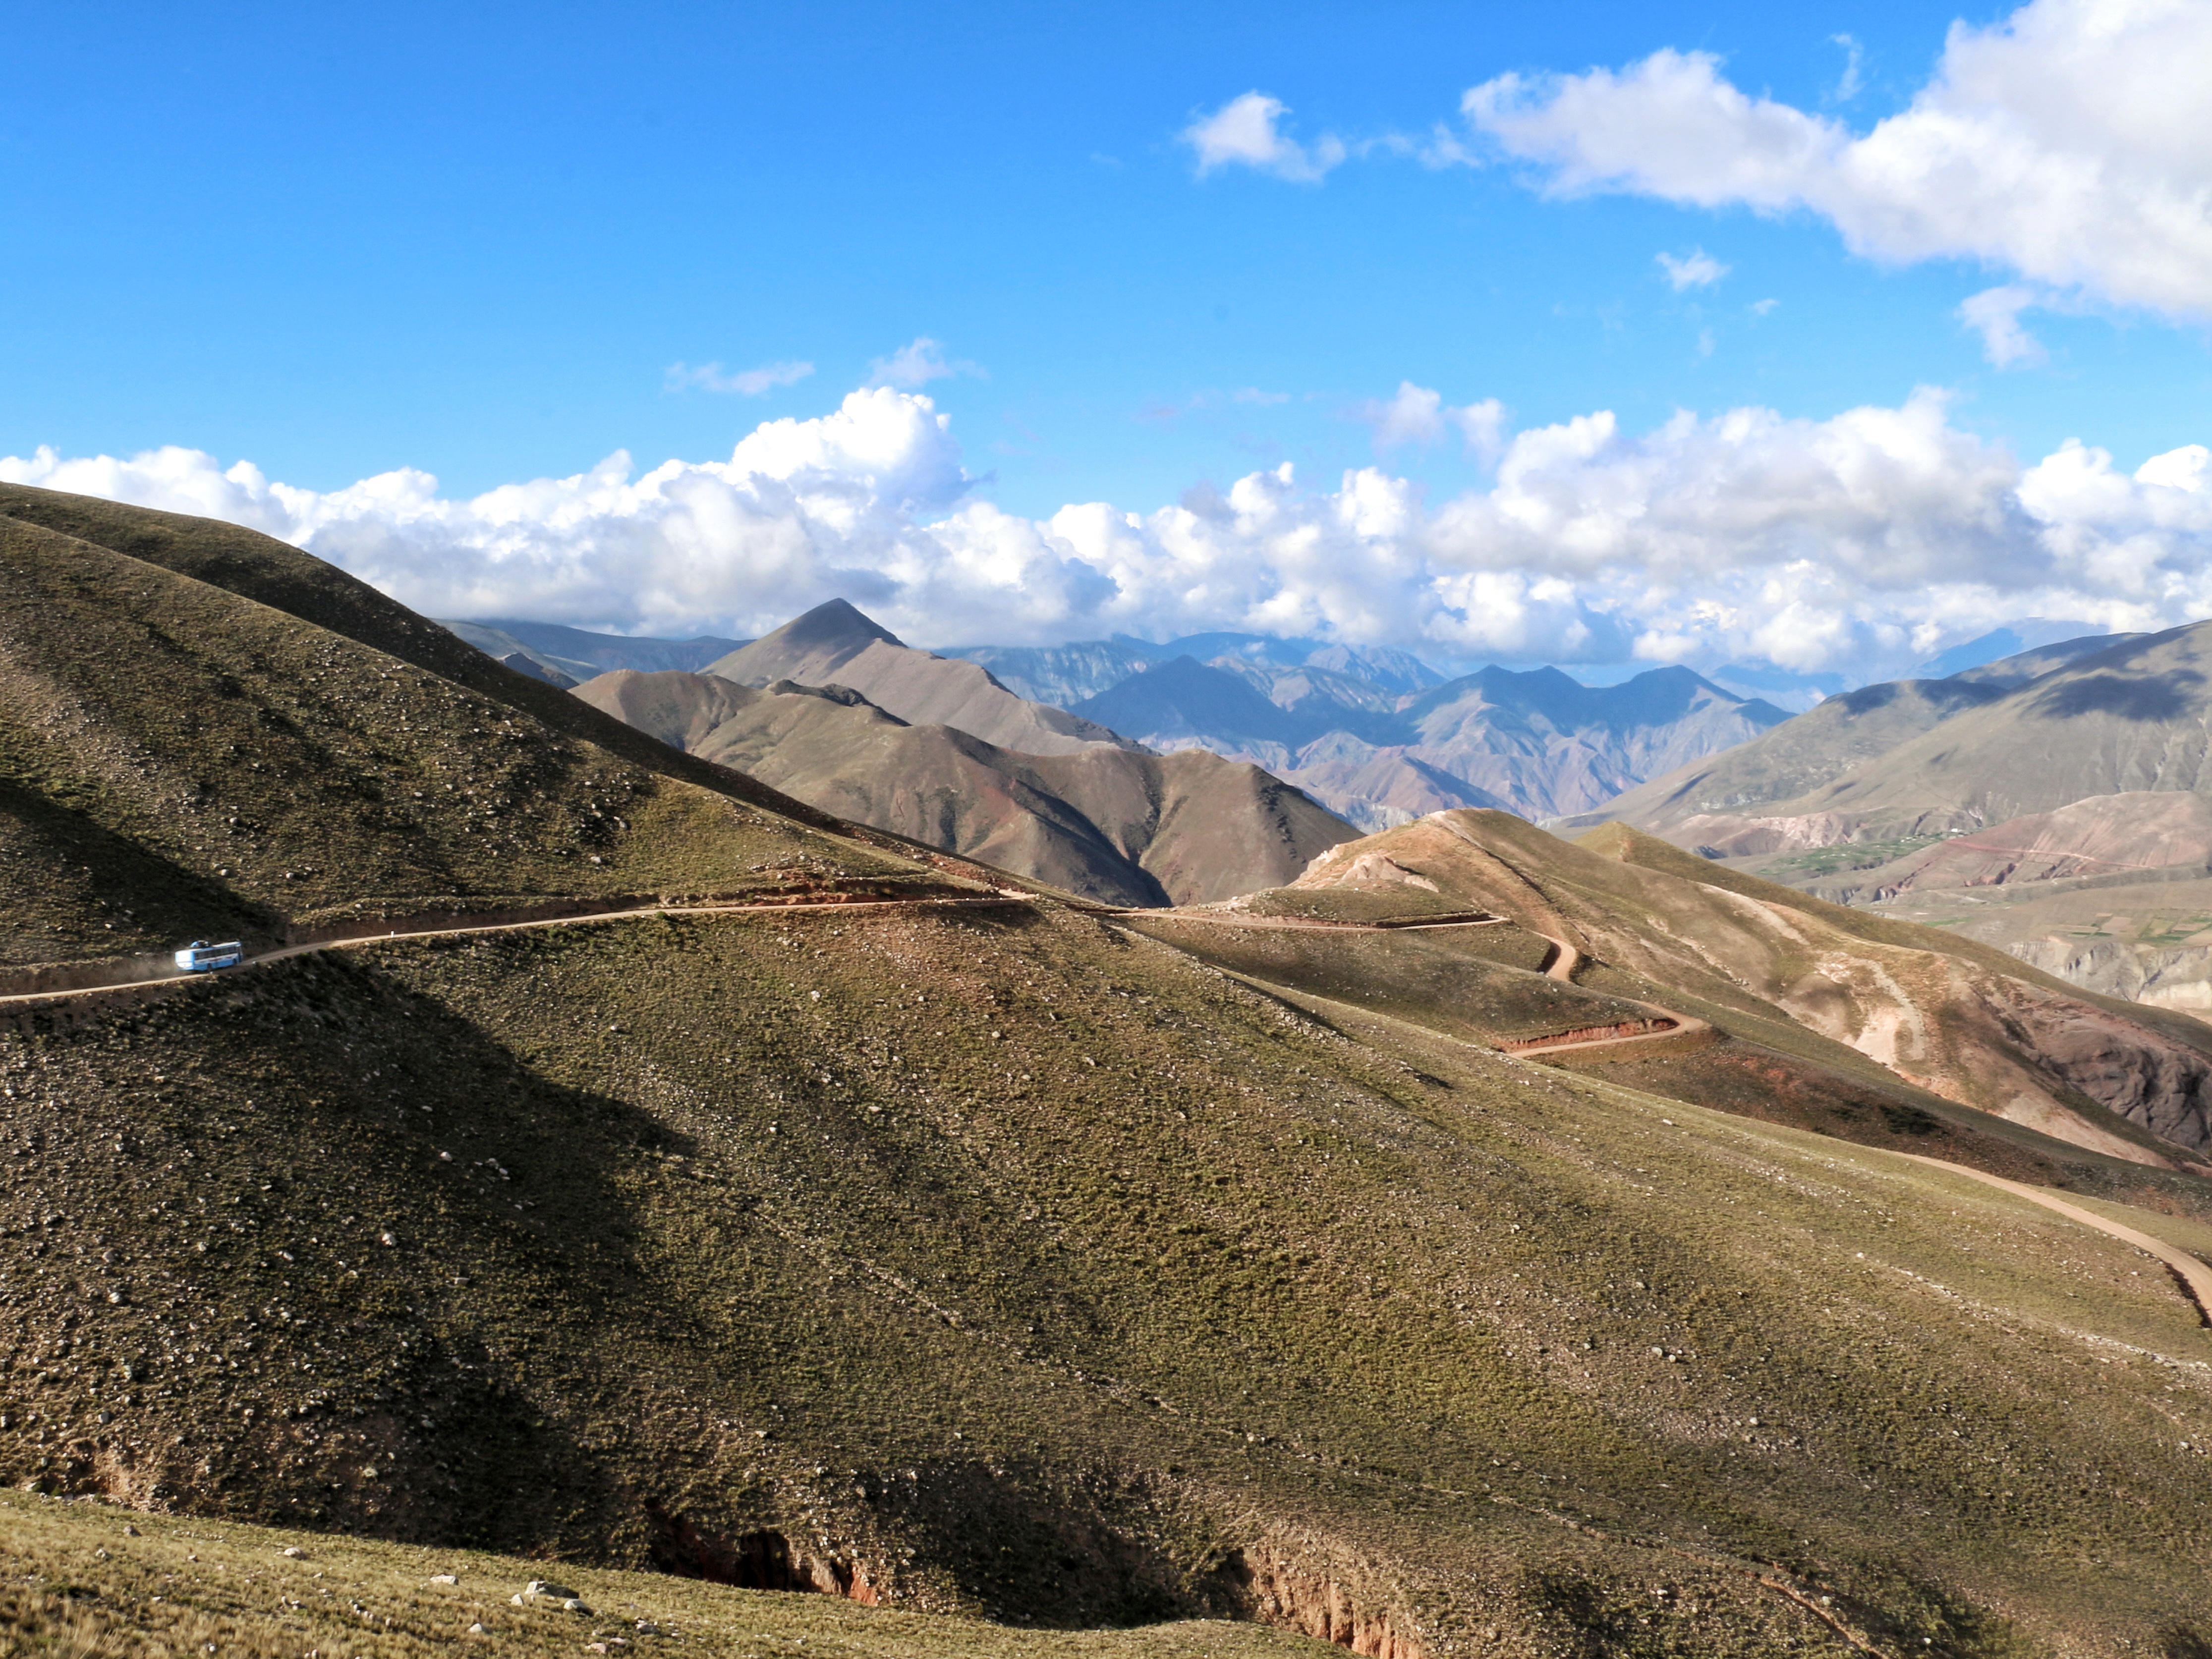 En pleno trayecto rumbo a Iruya, a lo lejos el micro que va por el camino de ripio: los imponentes paisajes forman parte de la experiencia andina (Leo Armella)